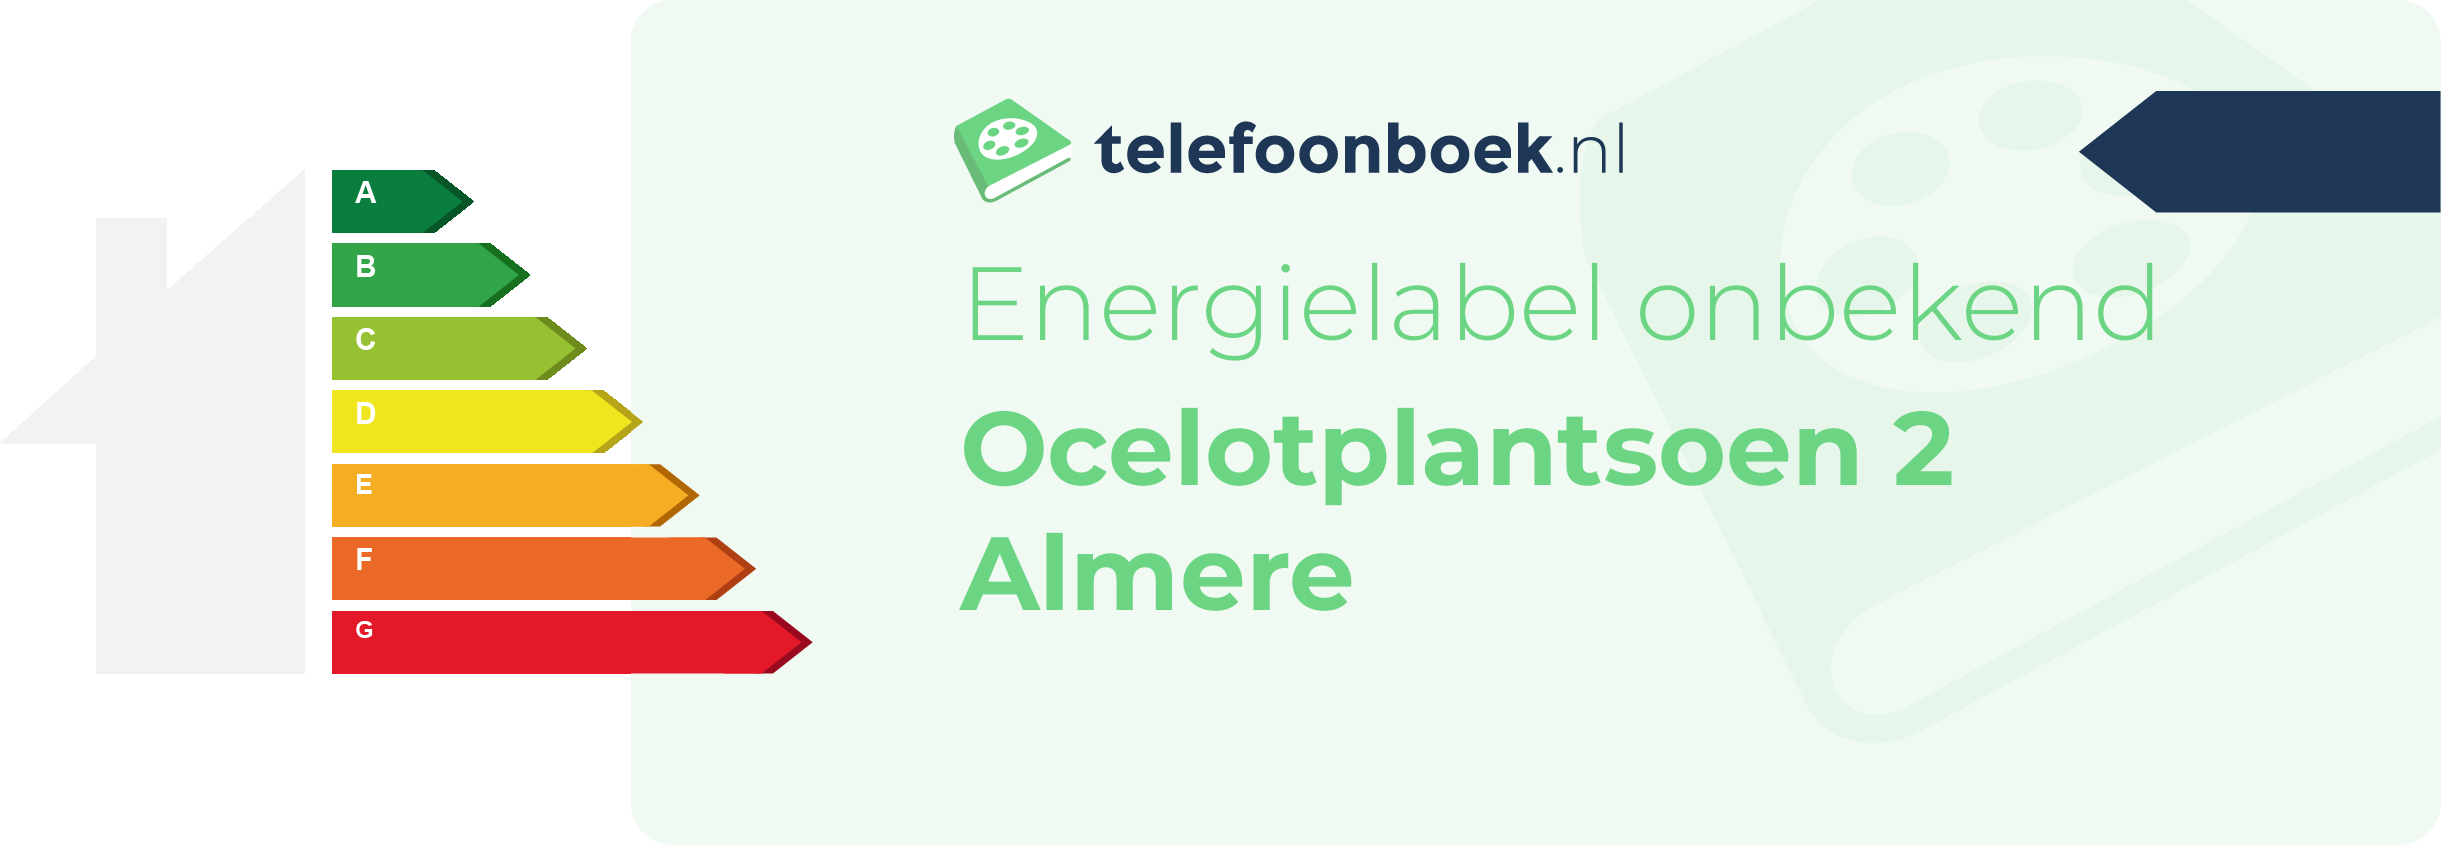 Energielabel Ocelotplantsoen 2 Almere